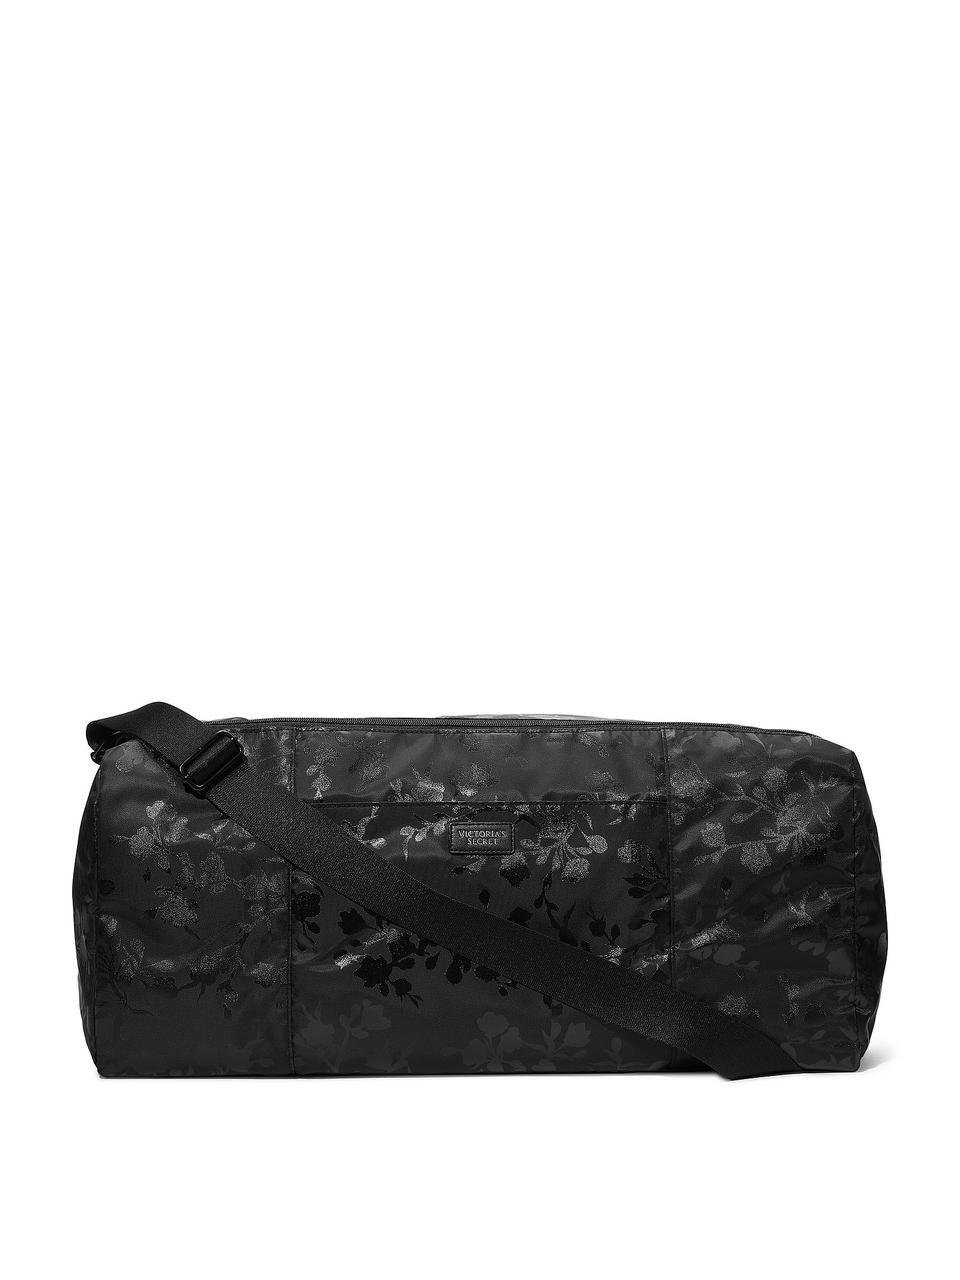 Женская сумка-рюкзак Victoria's Secret Duffle Bag спортивная Черный (2180820836)